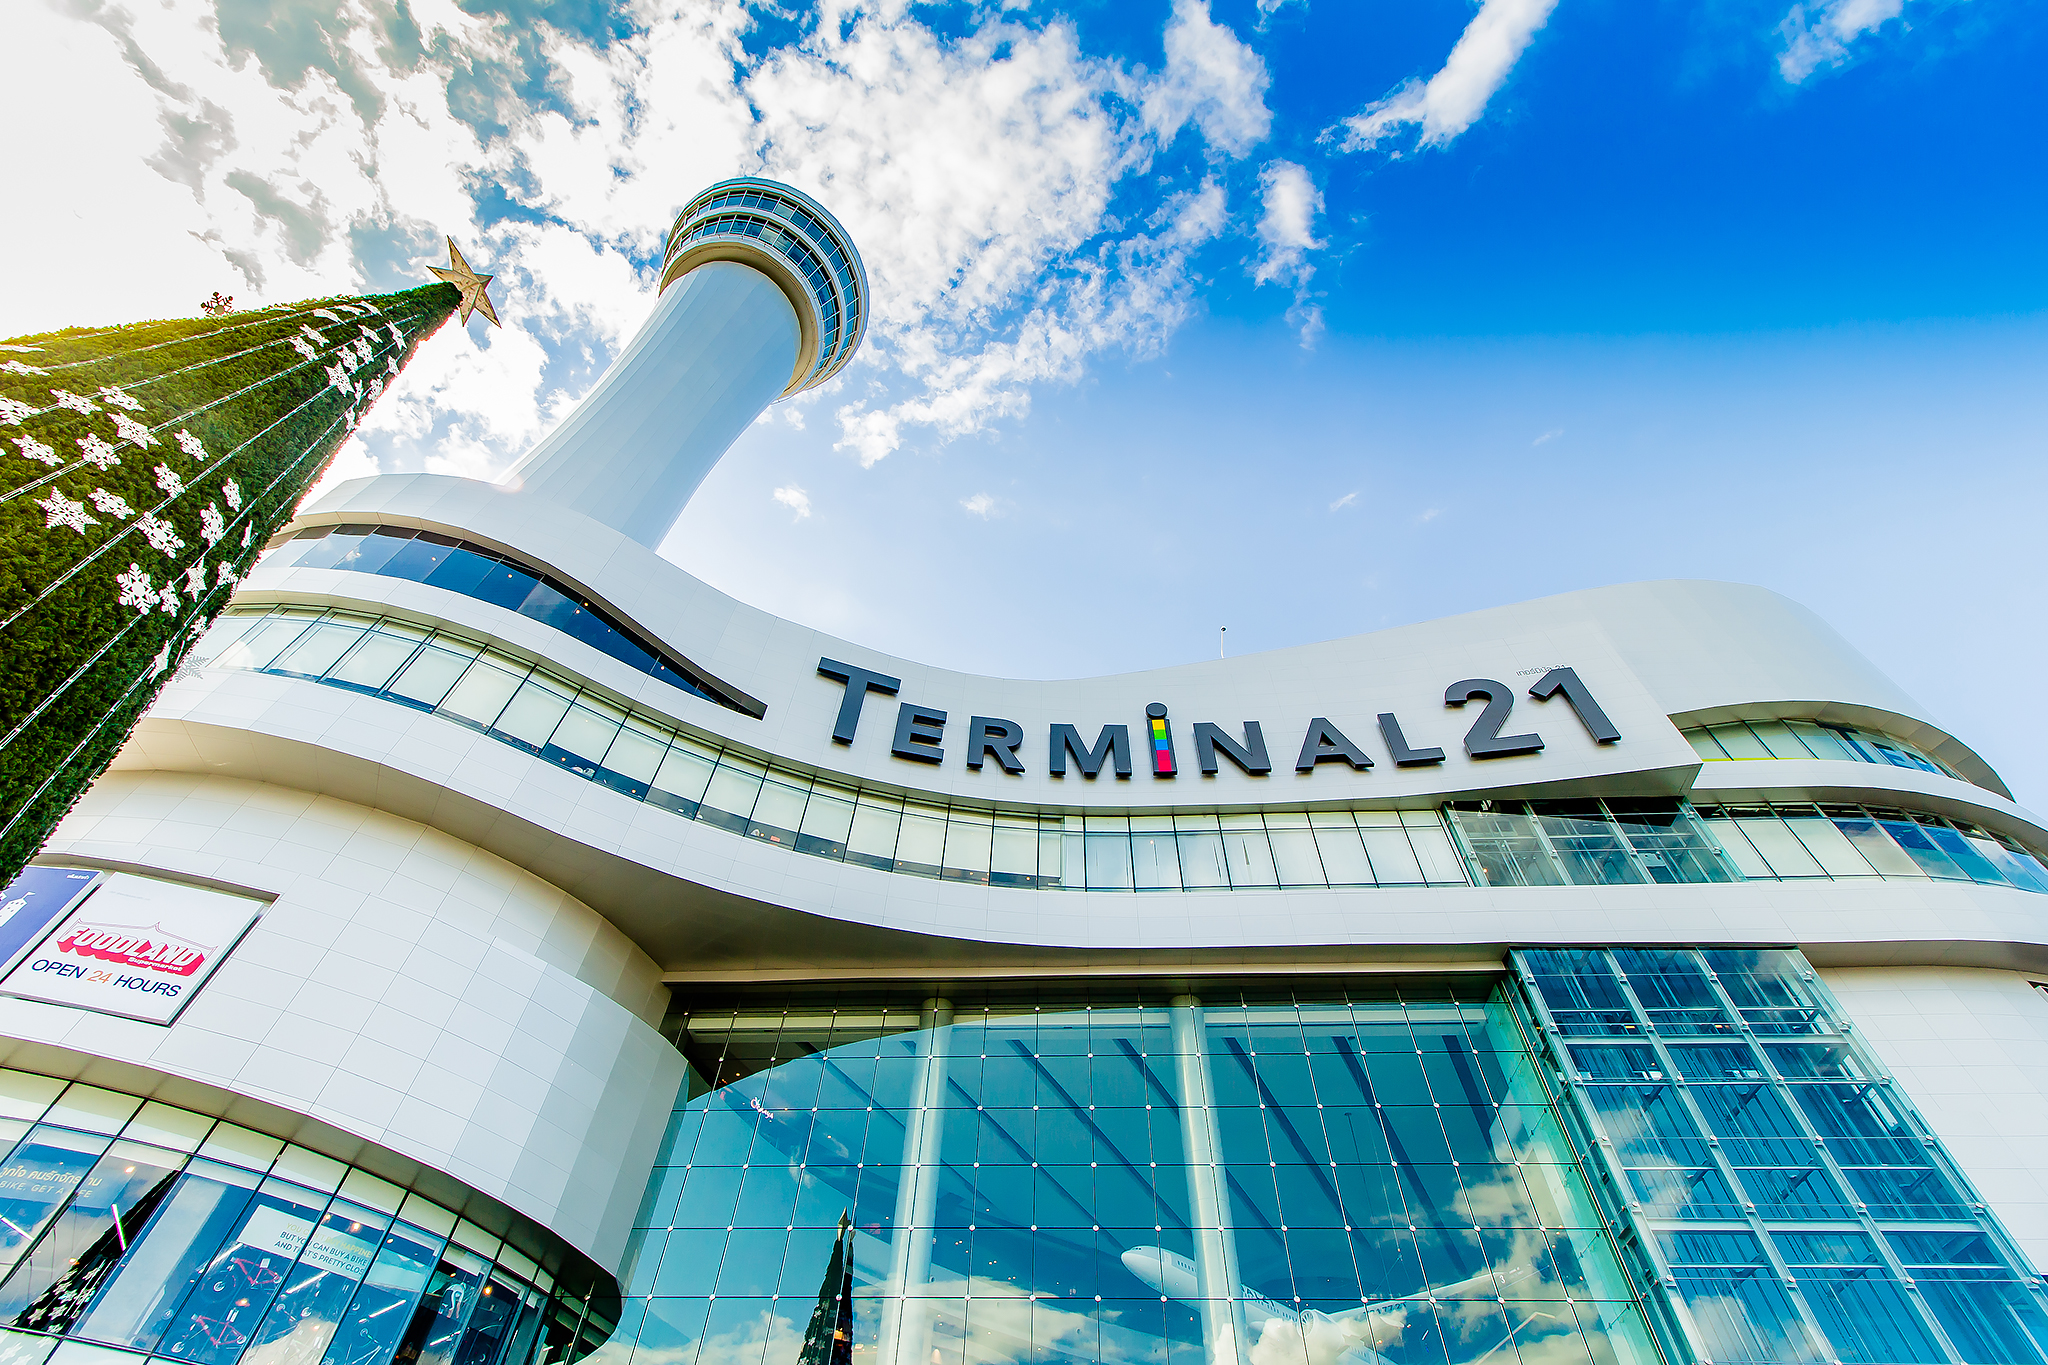 HARMAN 专业音视系统助力 Terminal 21 Korat 提供世界一流购物体验